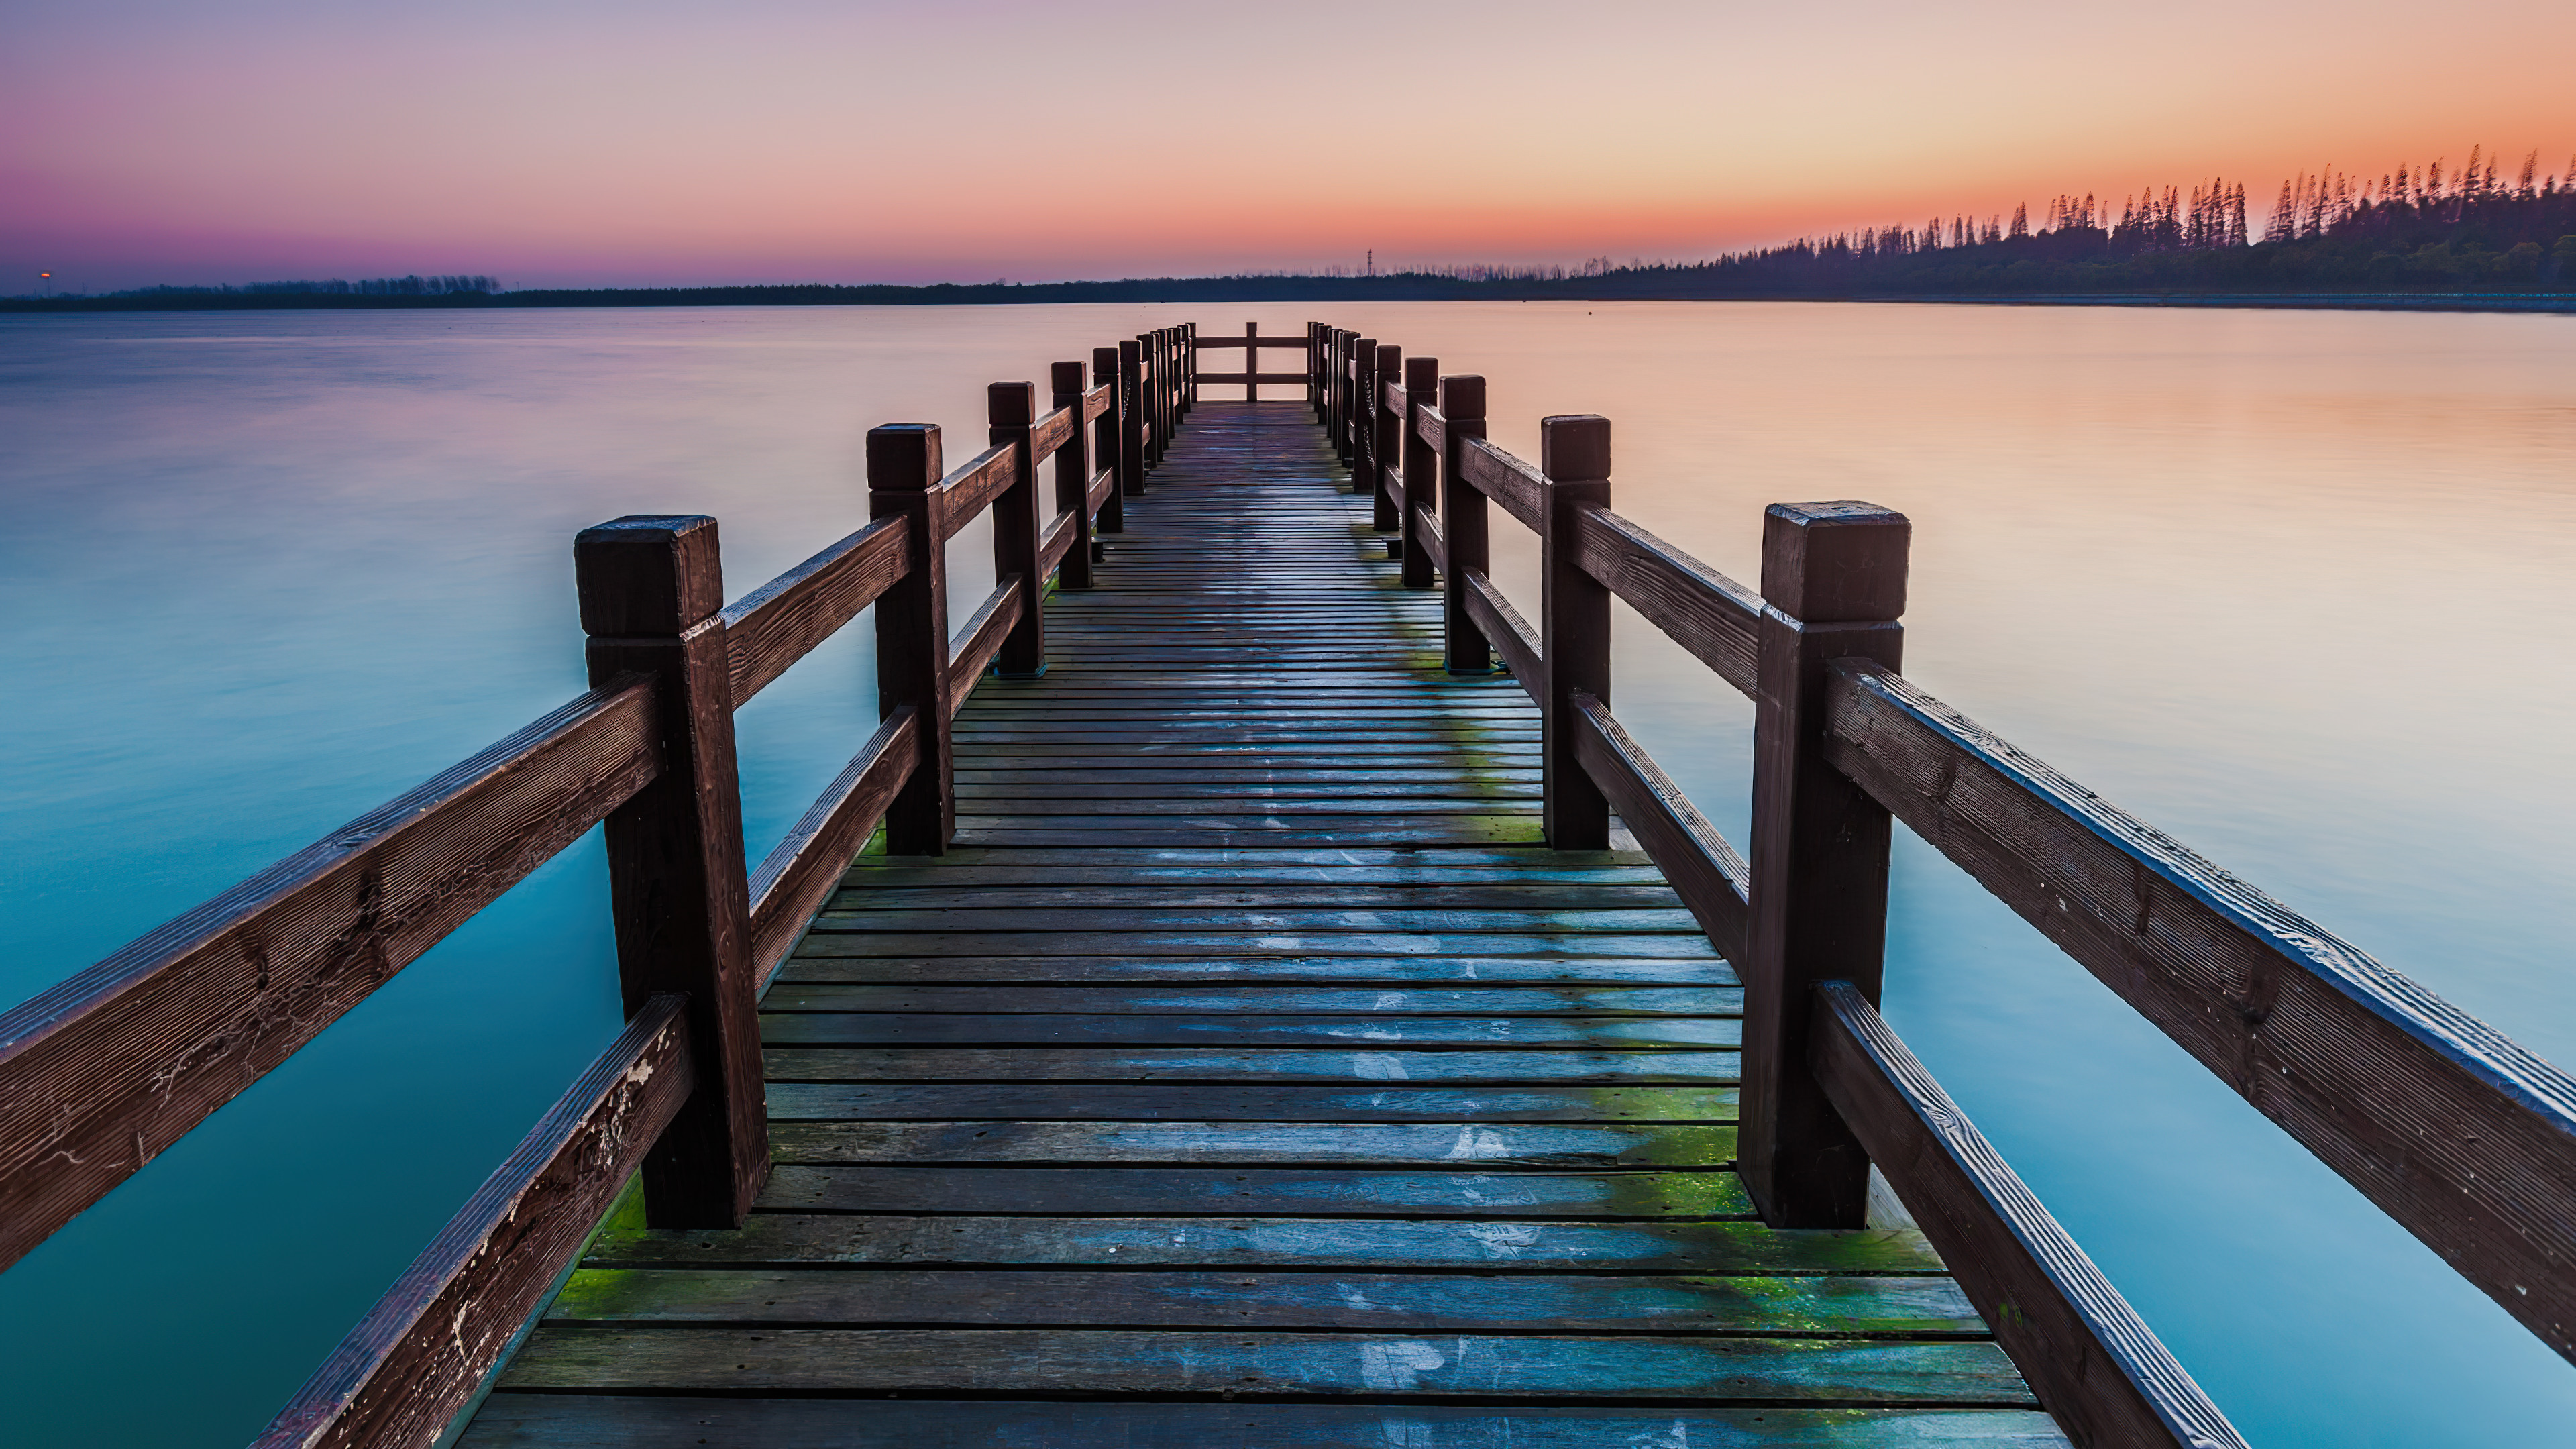 man made, pier, lake, sunset, wooden